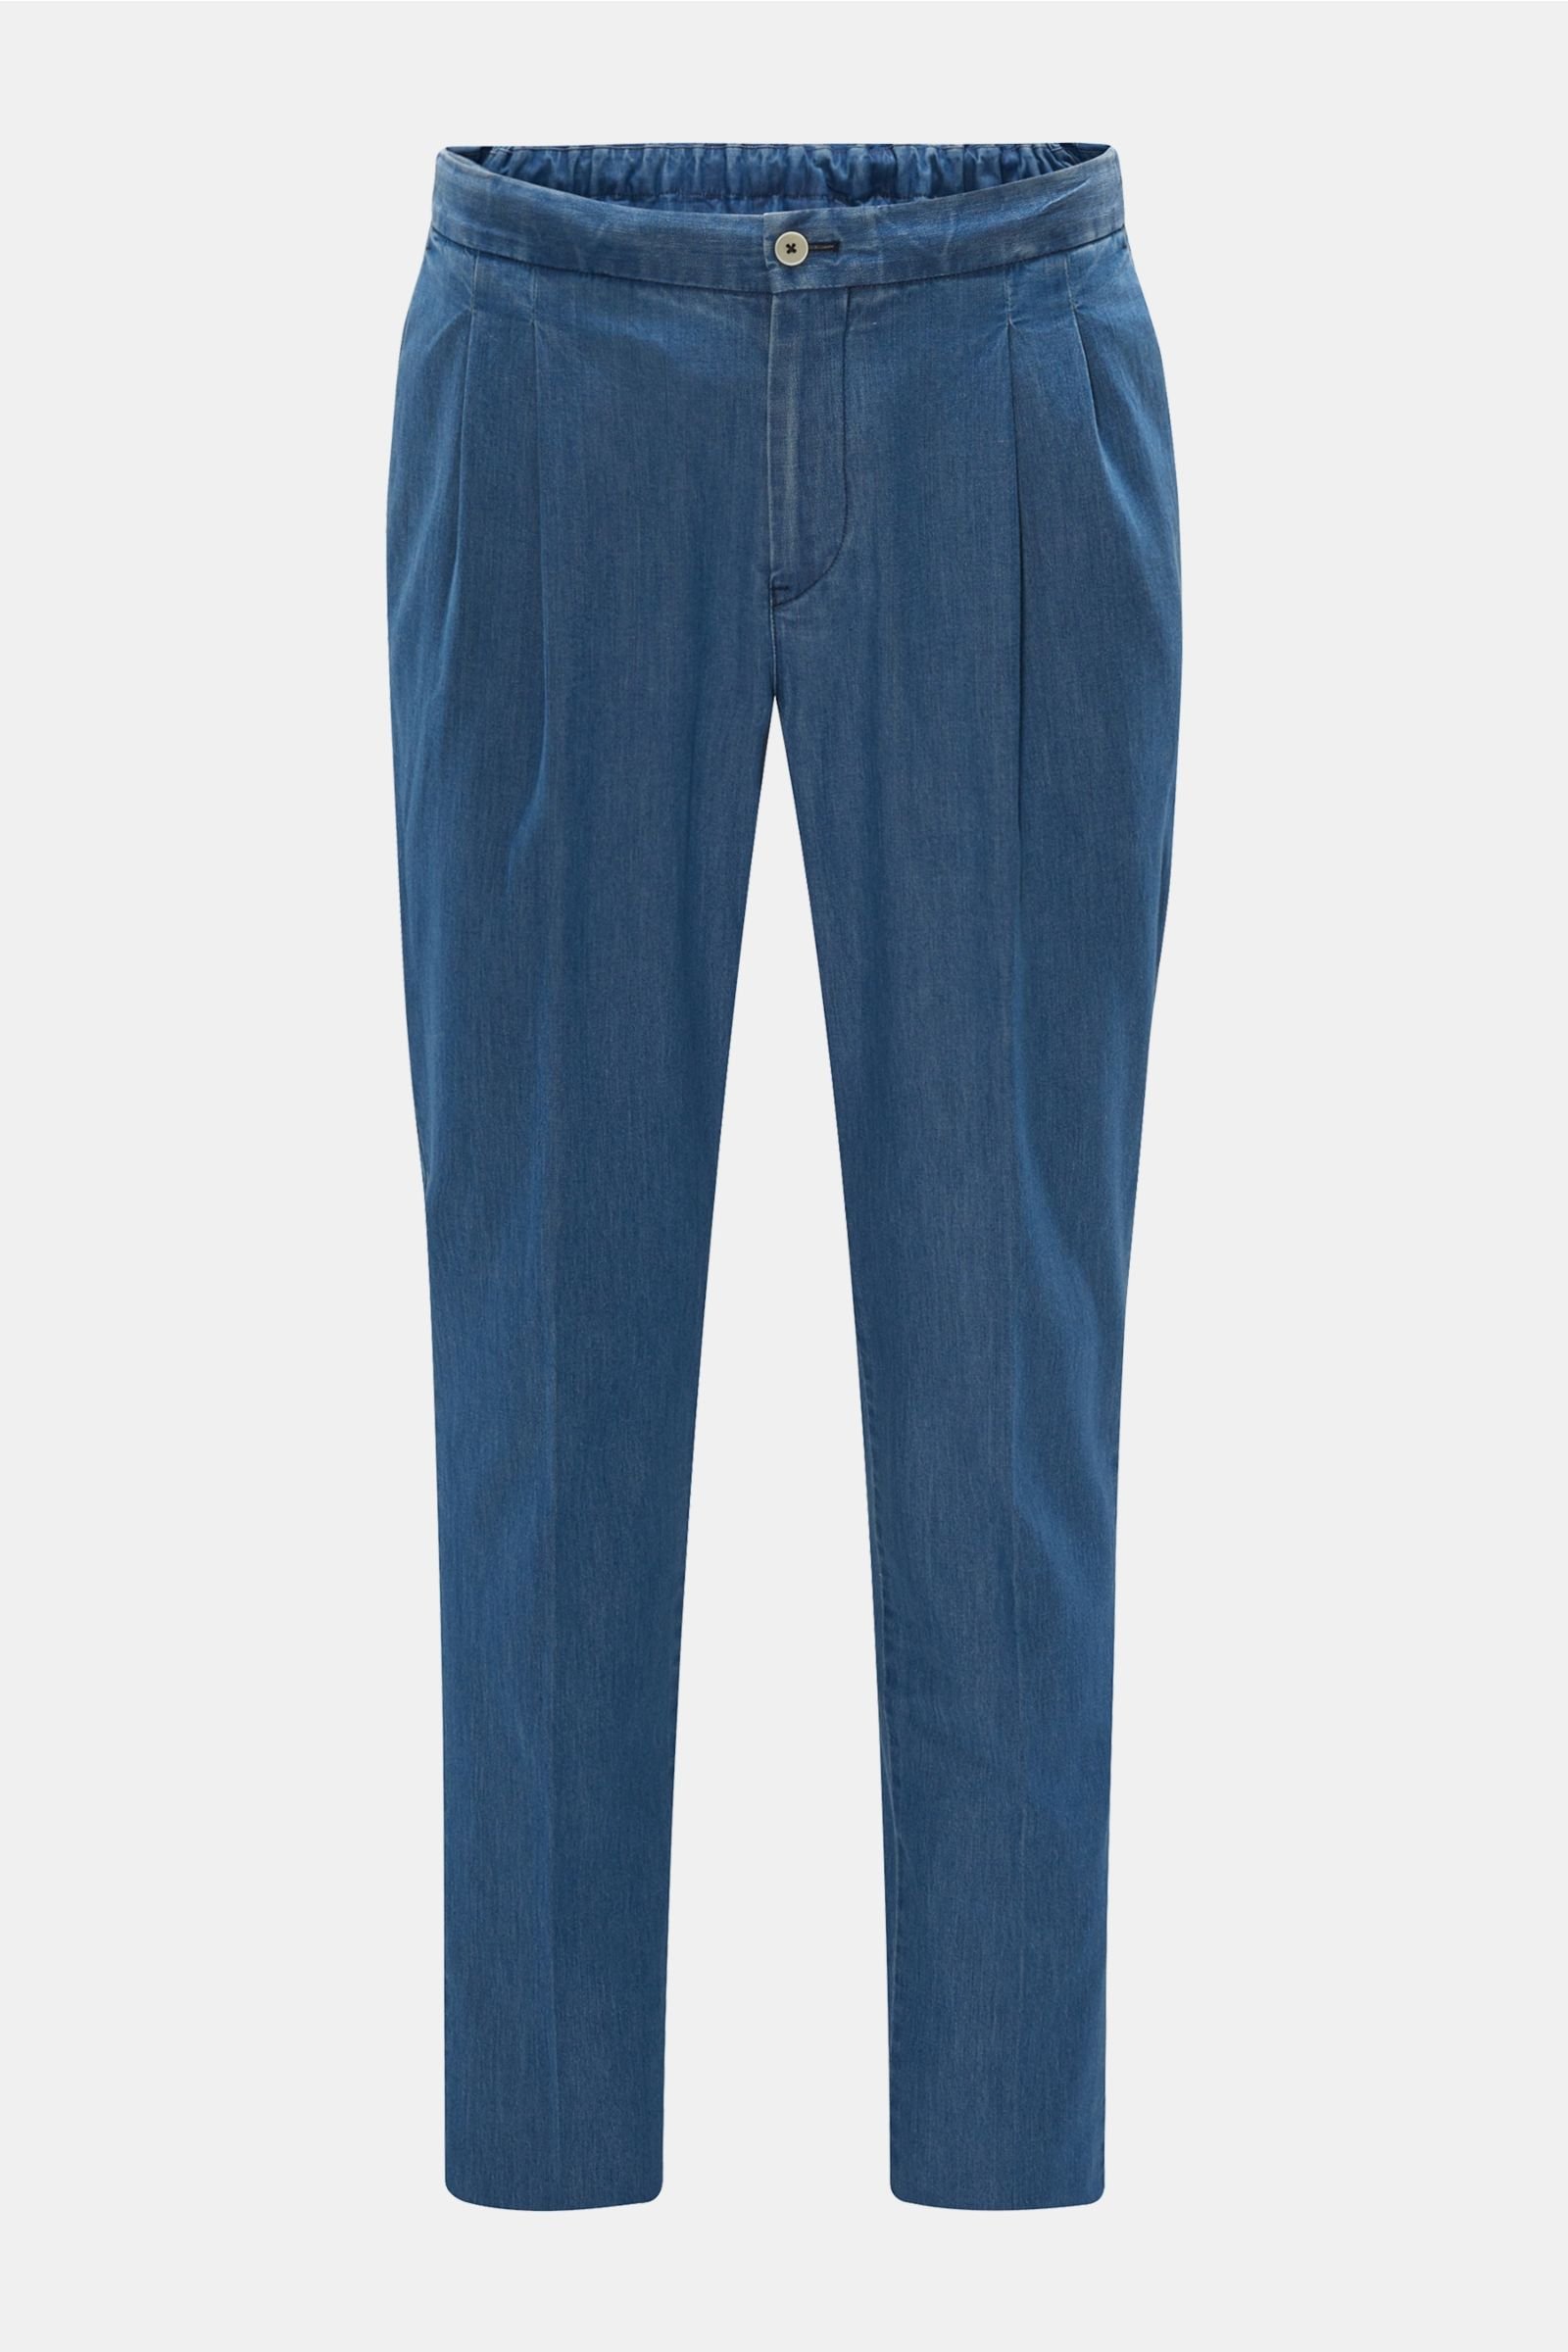 Jeans-Joggpants 'Sonny' graublau